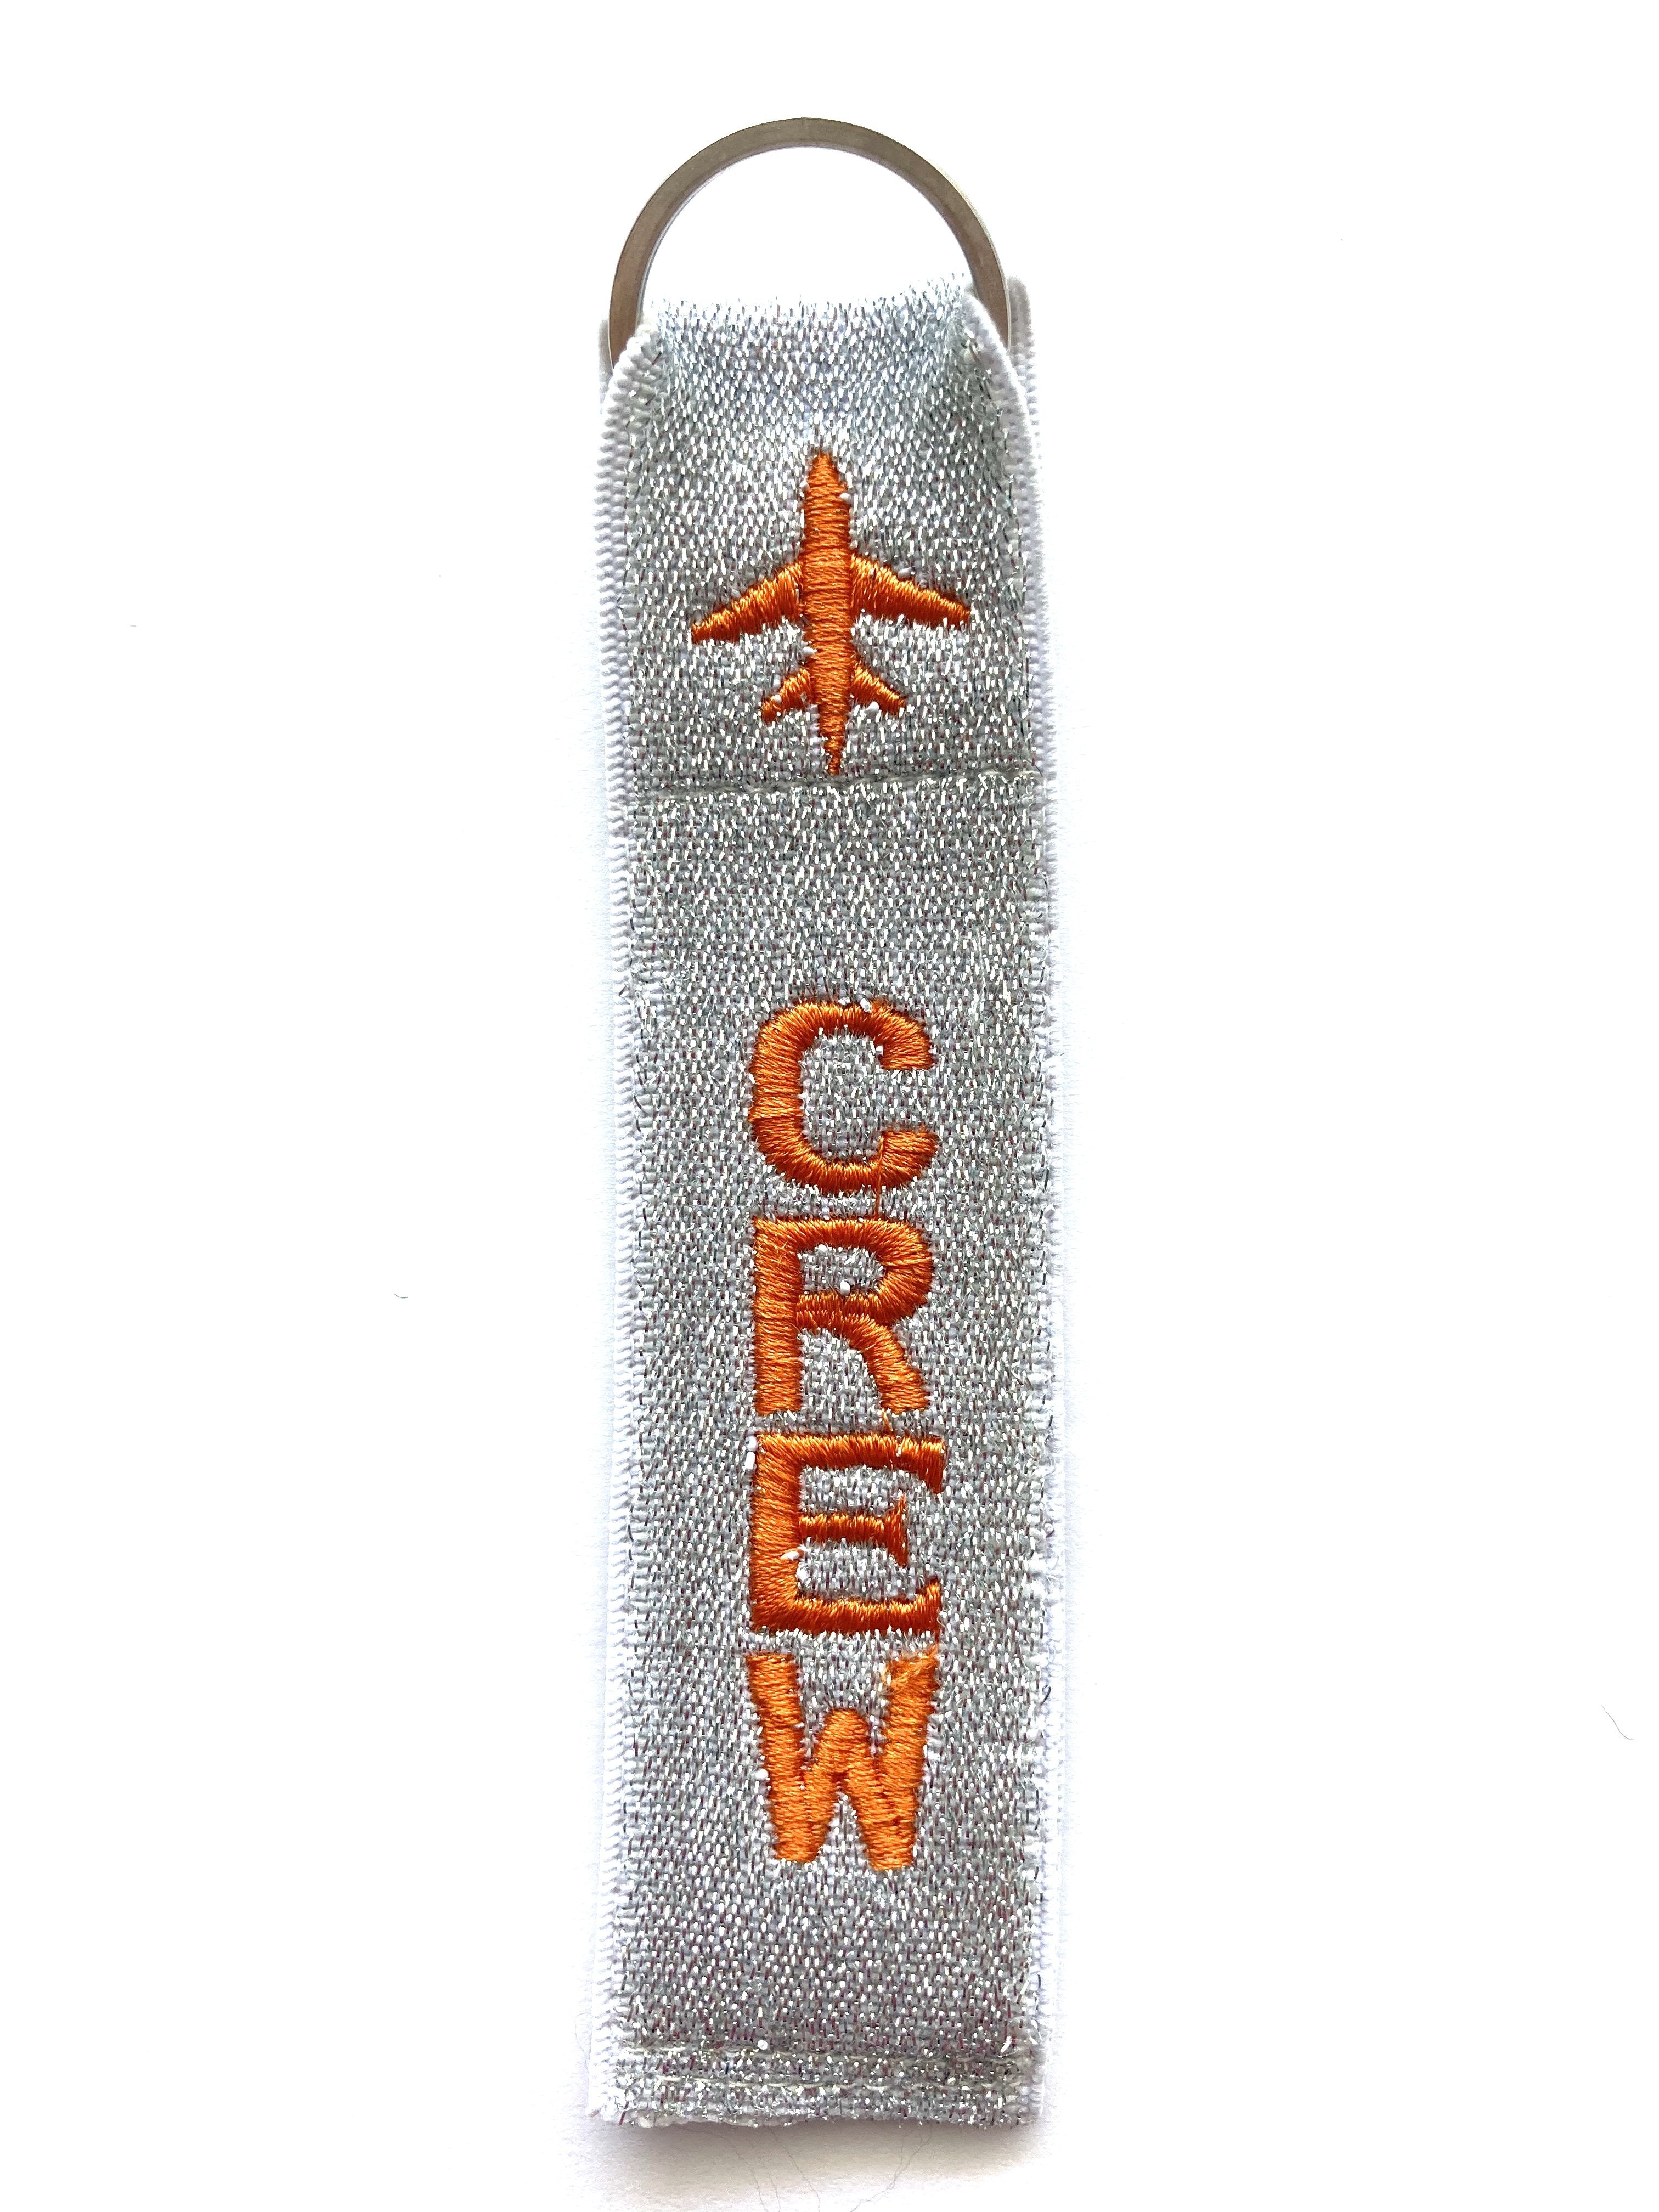 Crew Key Ring Luggage Tag - Orange on Silver